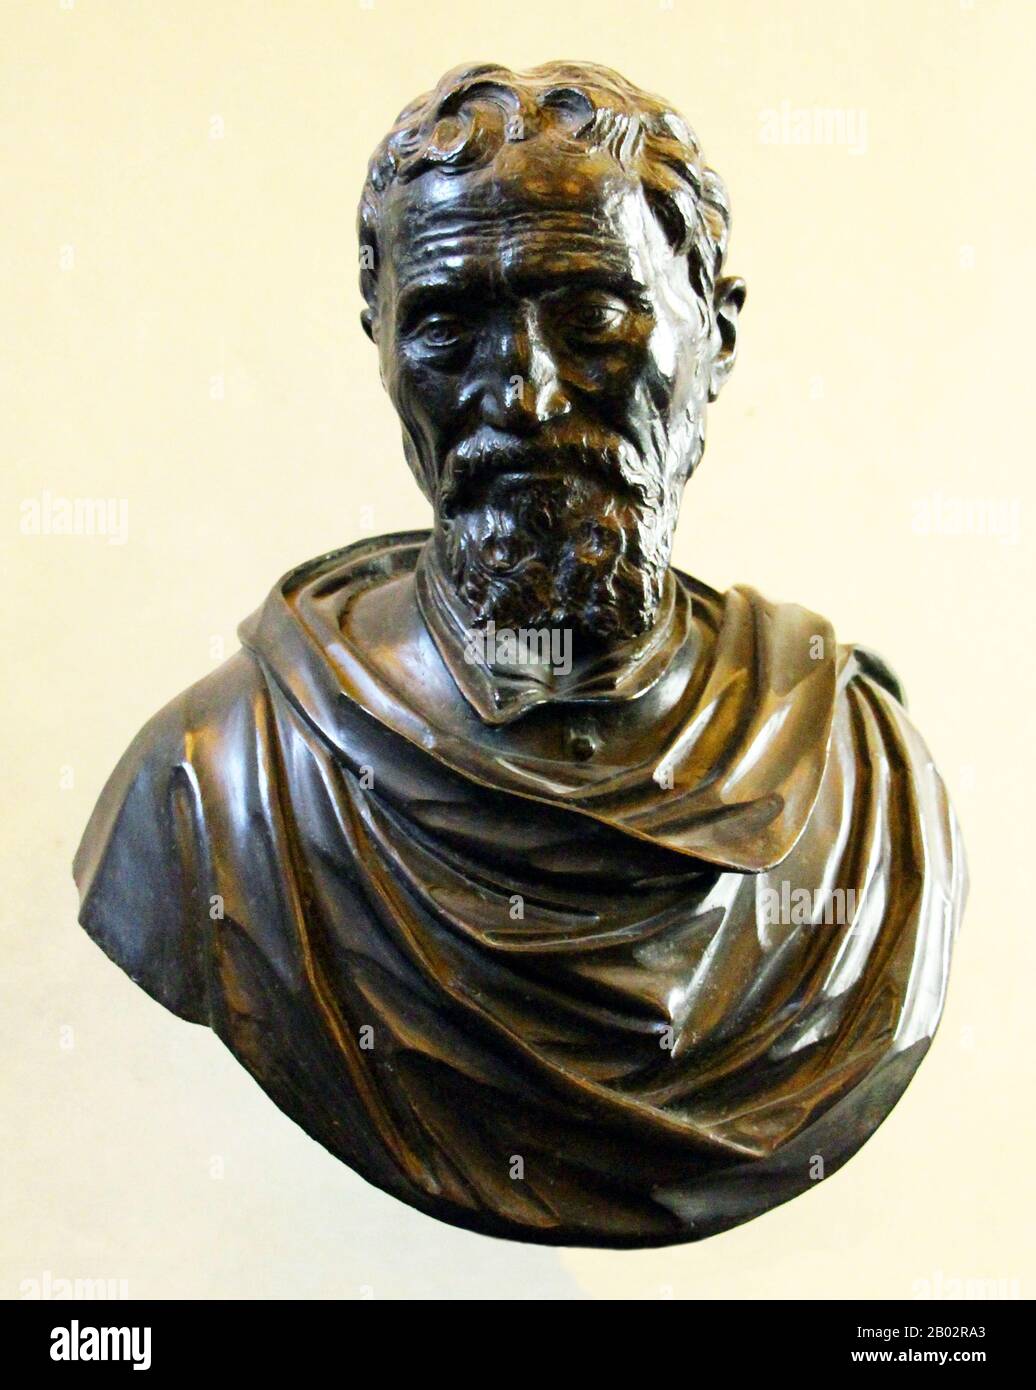 18" Italian Renaissance Man Sculptor Michelangelo Home Gallery Bust Sculpture 